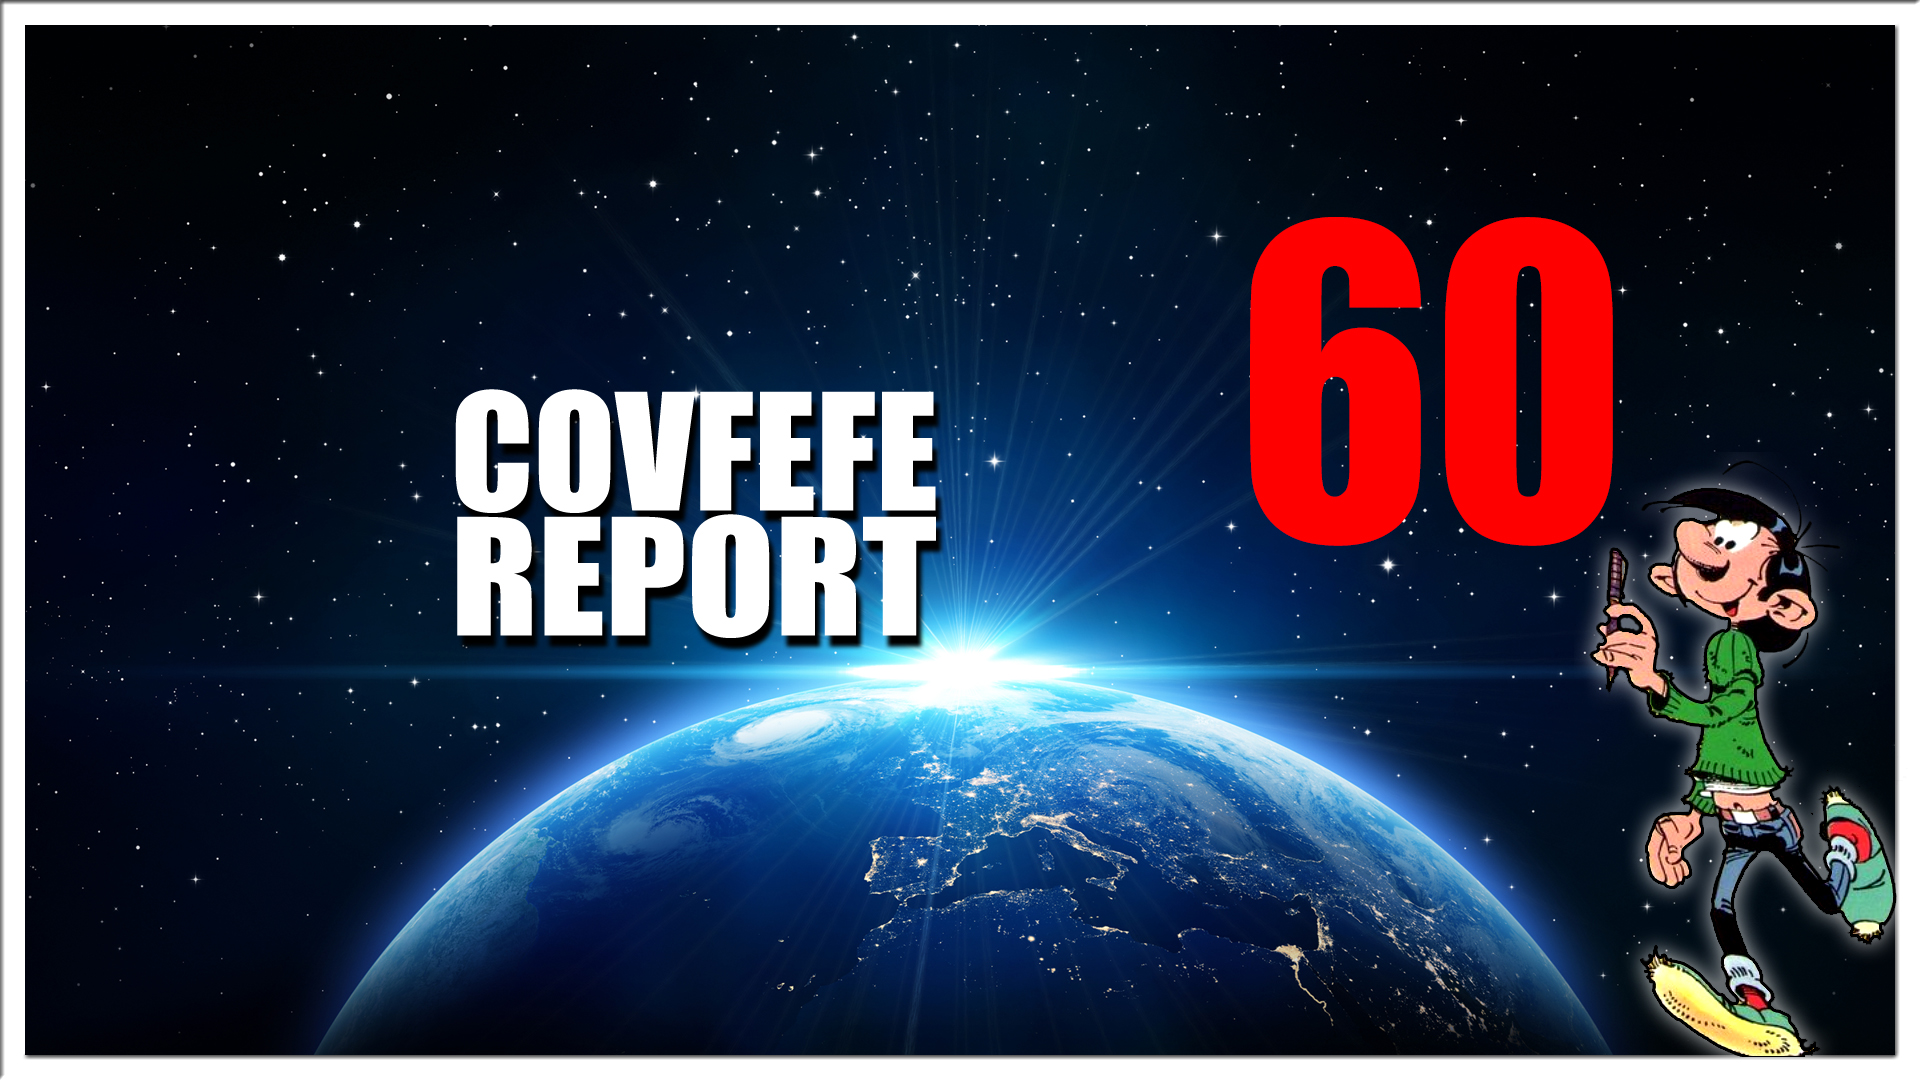 Covfefe Report 60. Qpost, Uitleg Qmap.pub en meer